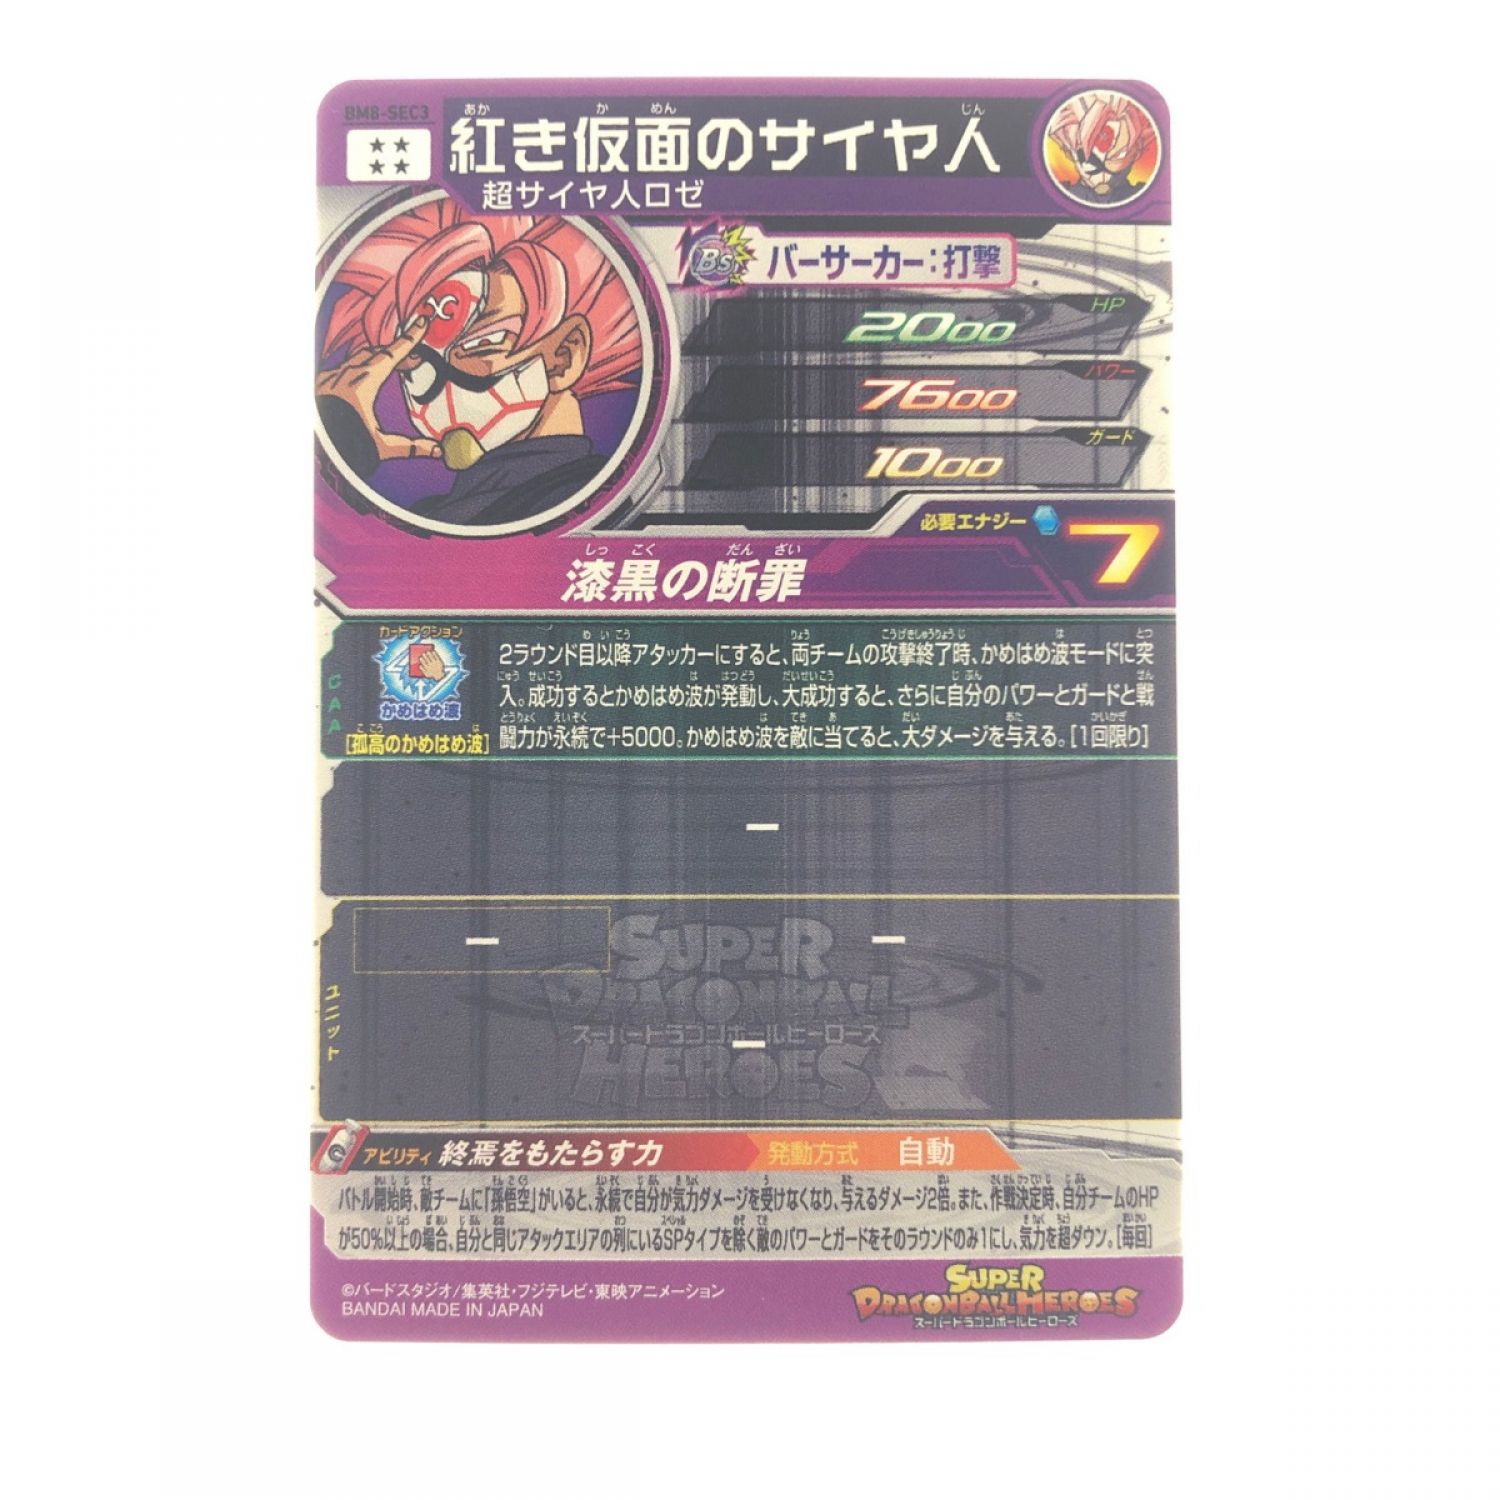 ドラゴンボールヒーローズ BM8-sec3トレーディングカード